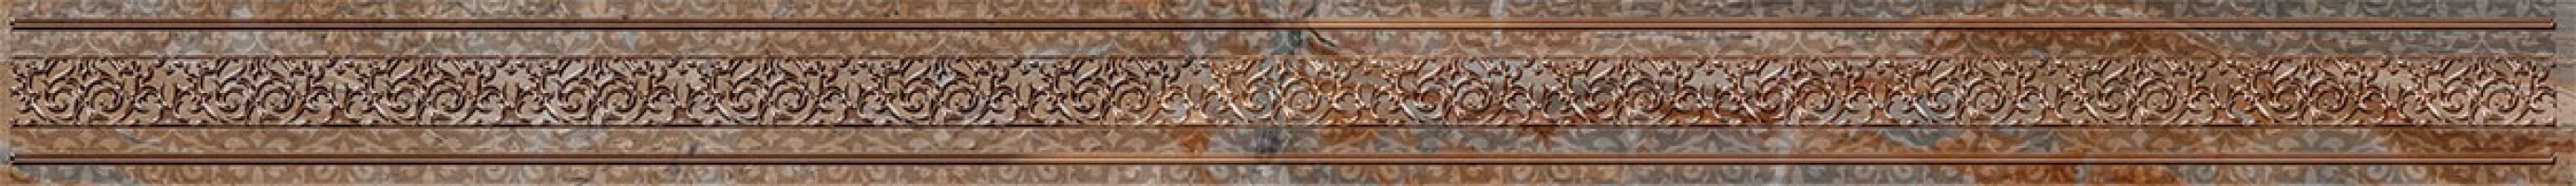 Бордюр Нефрит-Керамика Лигурия 4x60 05-01-1-48-03-15-607-0